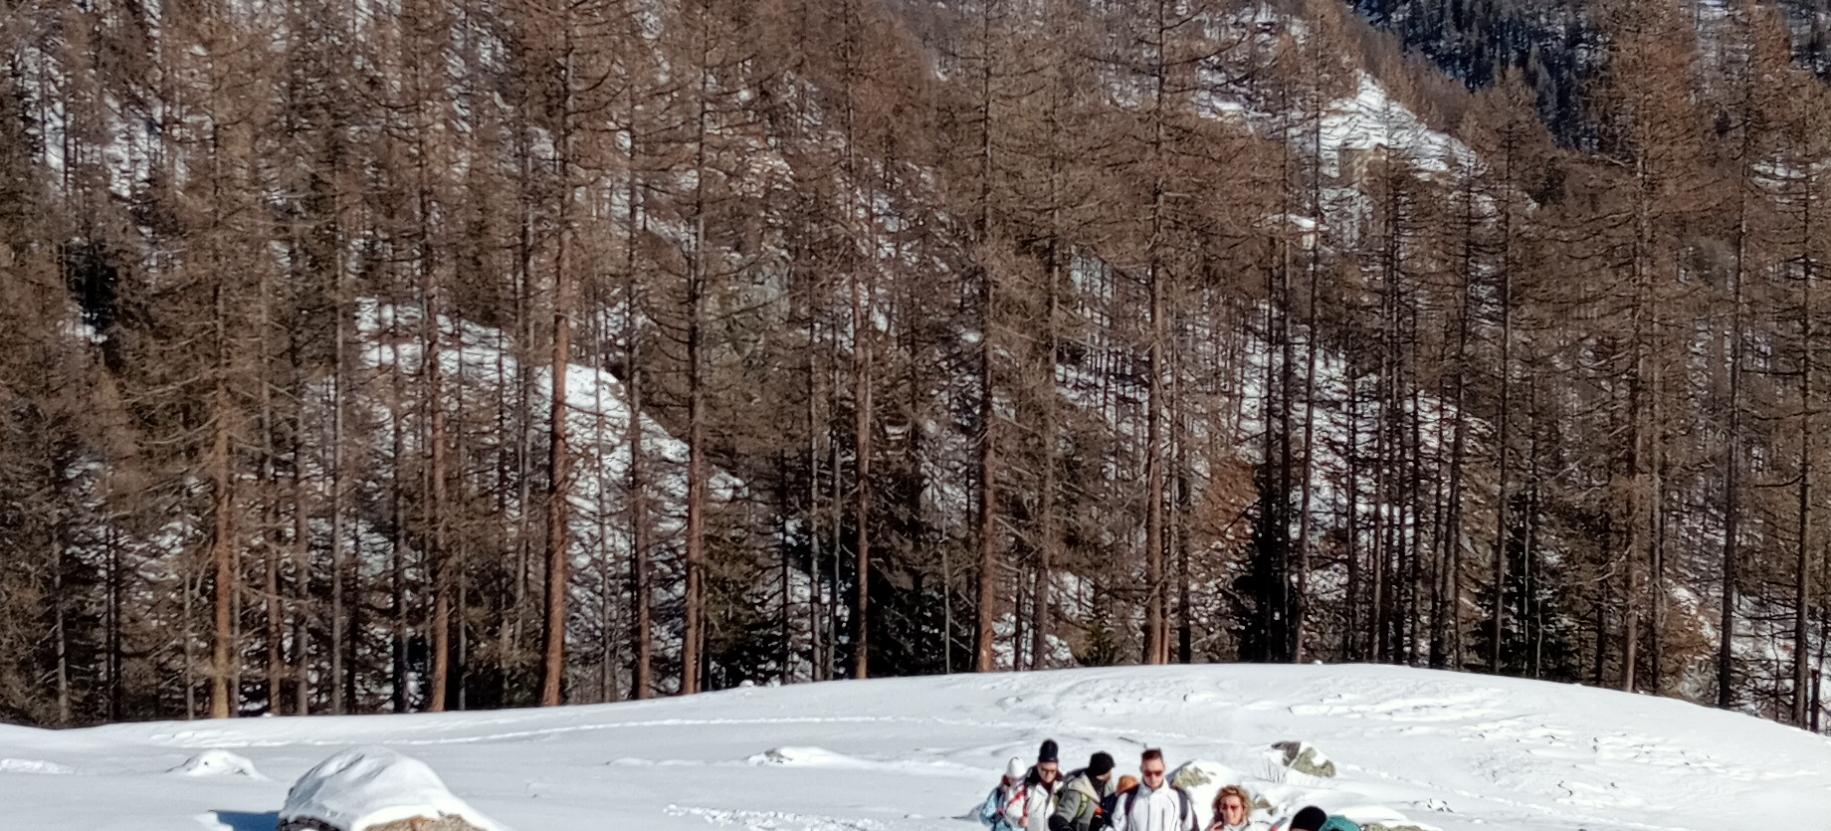 Snowshoe hike in Val di Nanaz